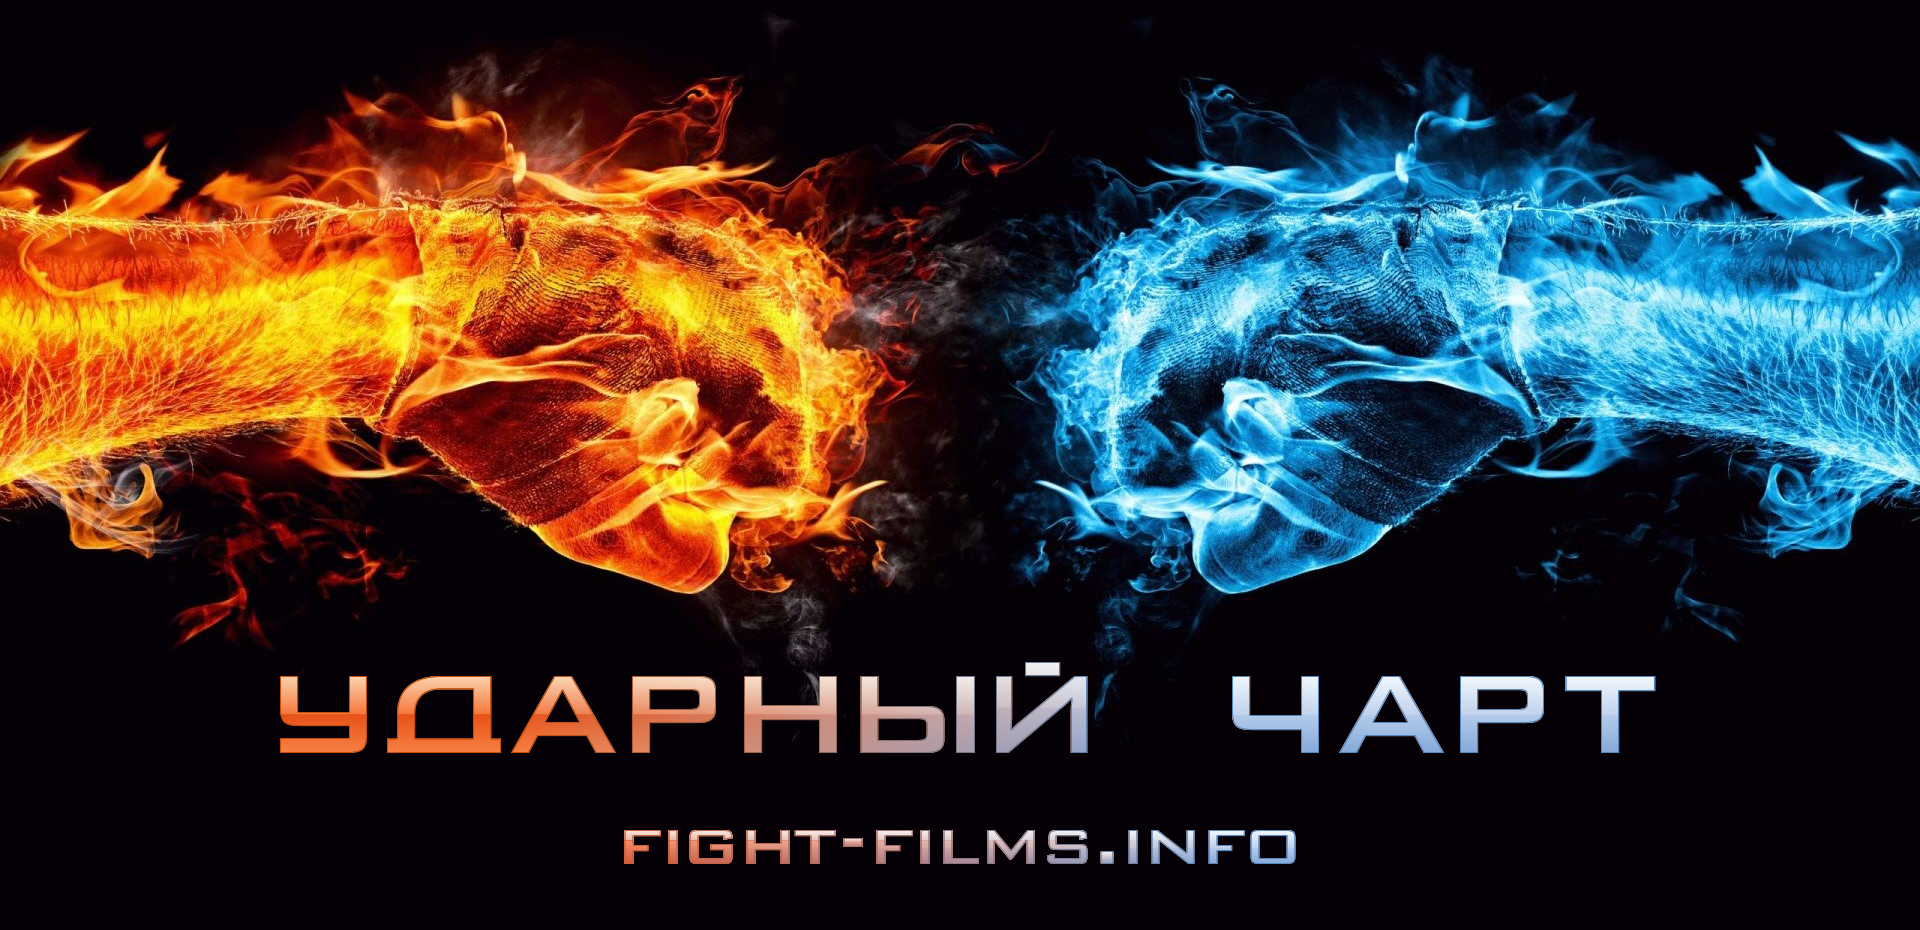 Ударный чарт (fight-films.info)